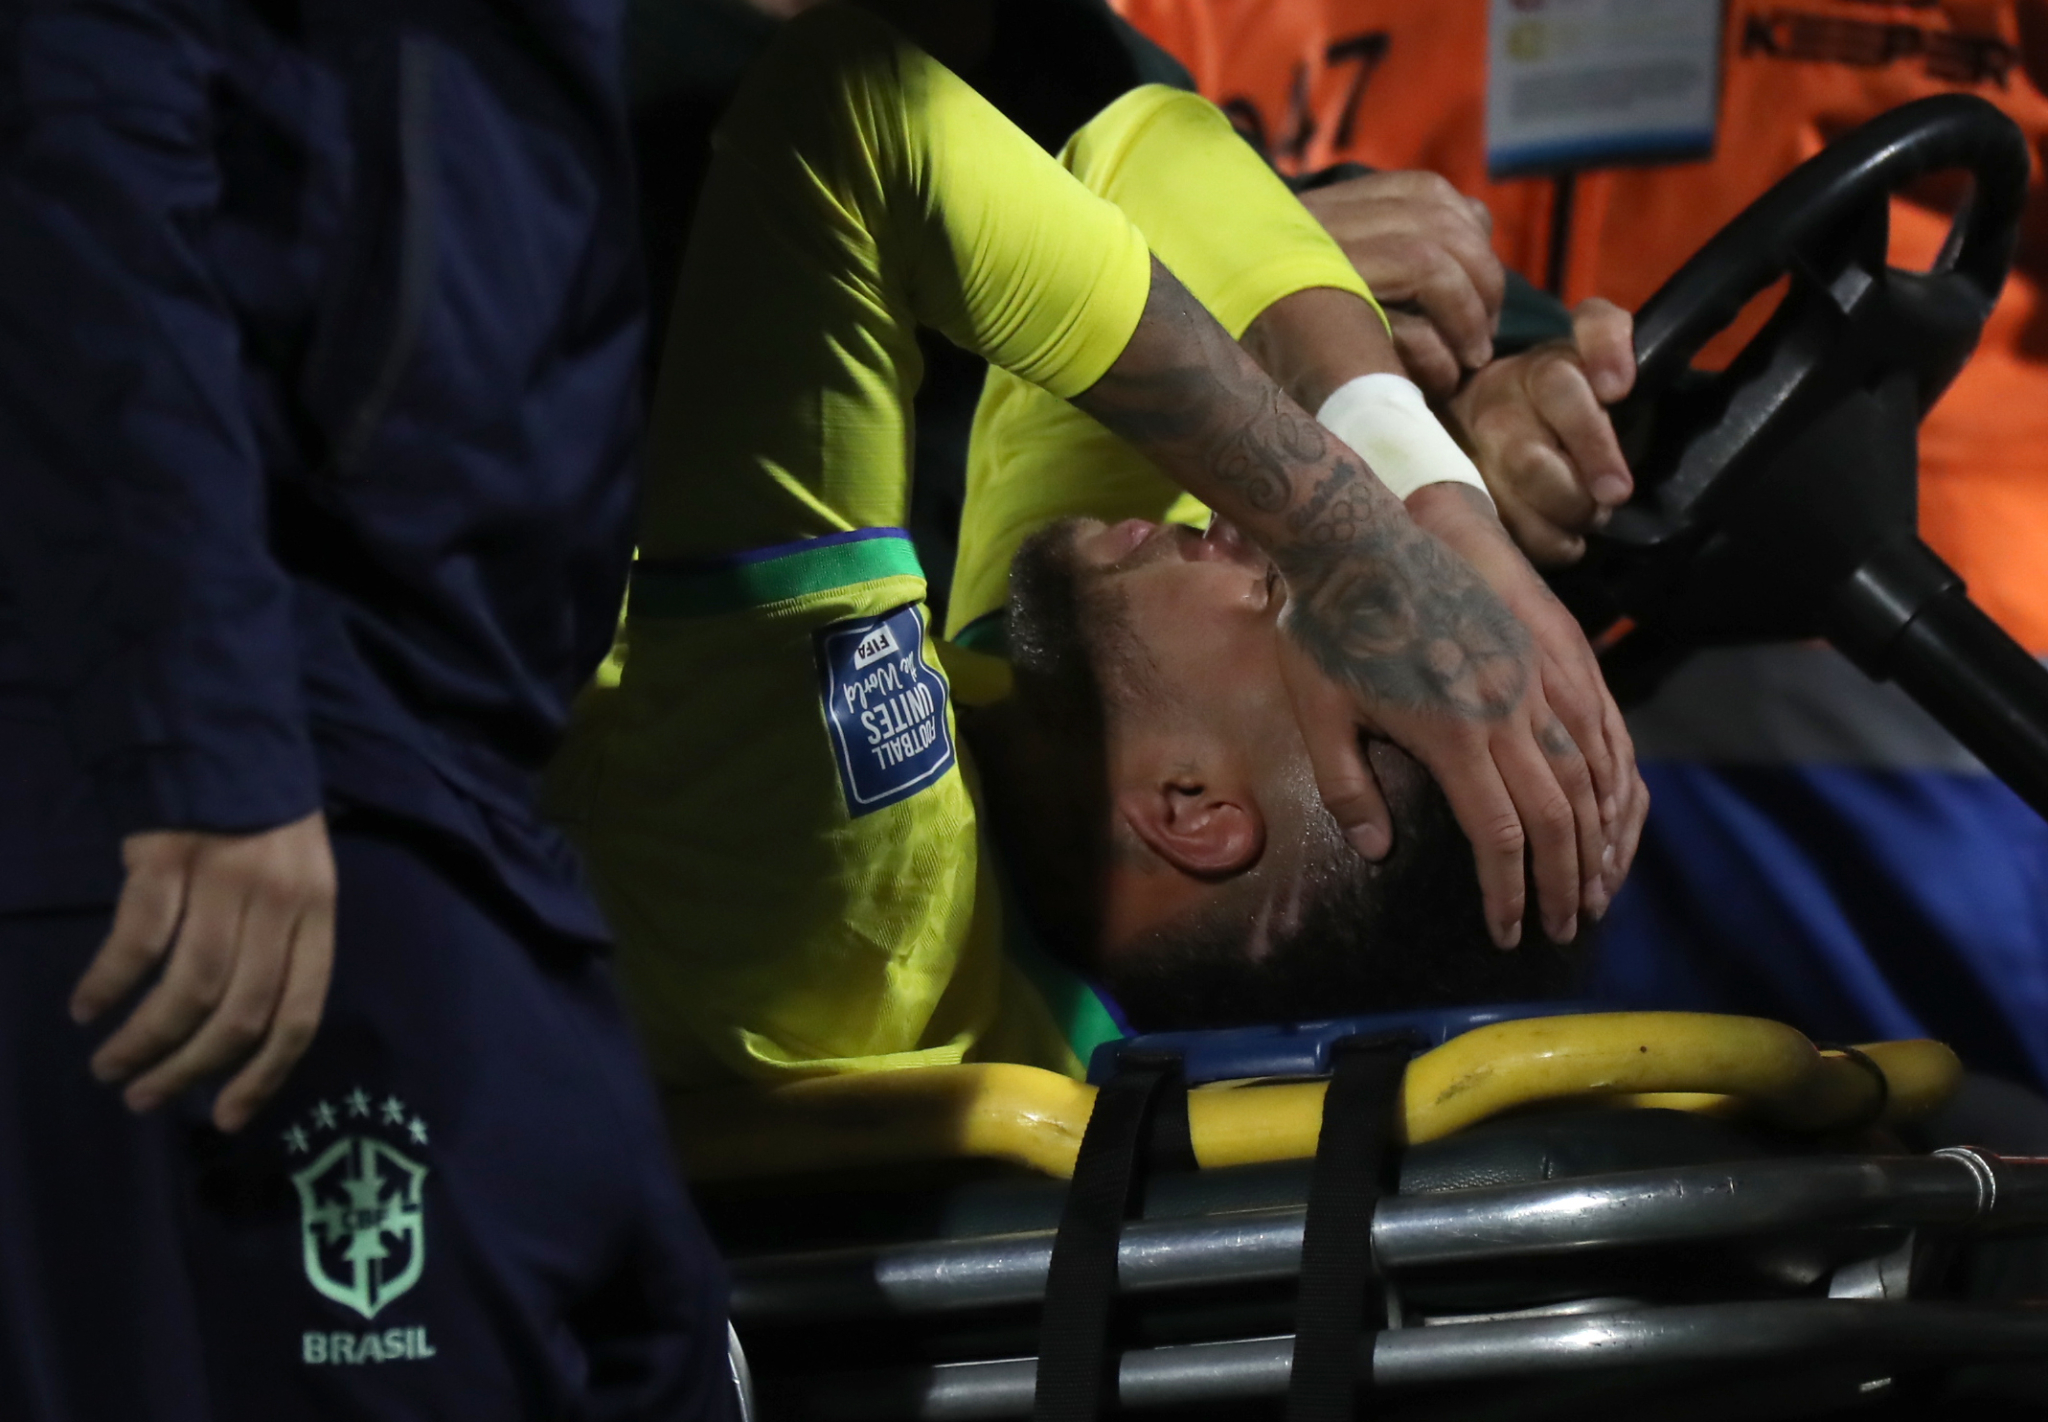 Quanto tempo levará a recuperação de Neymar? Especialistas opinam